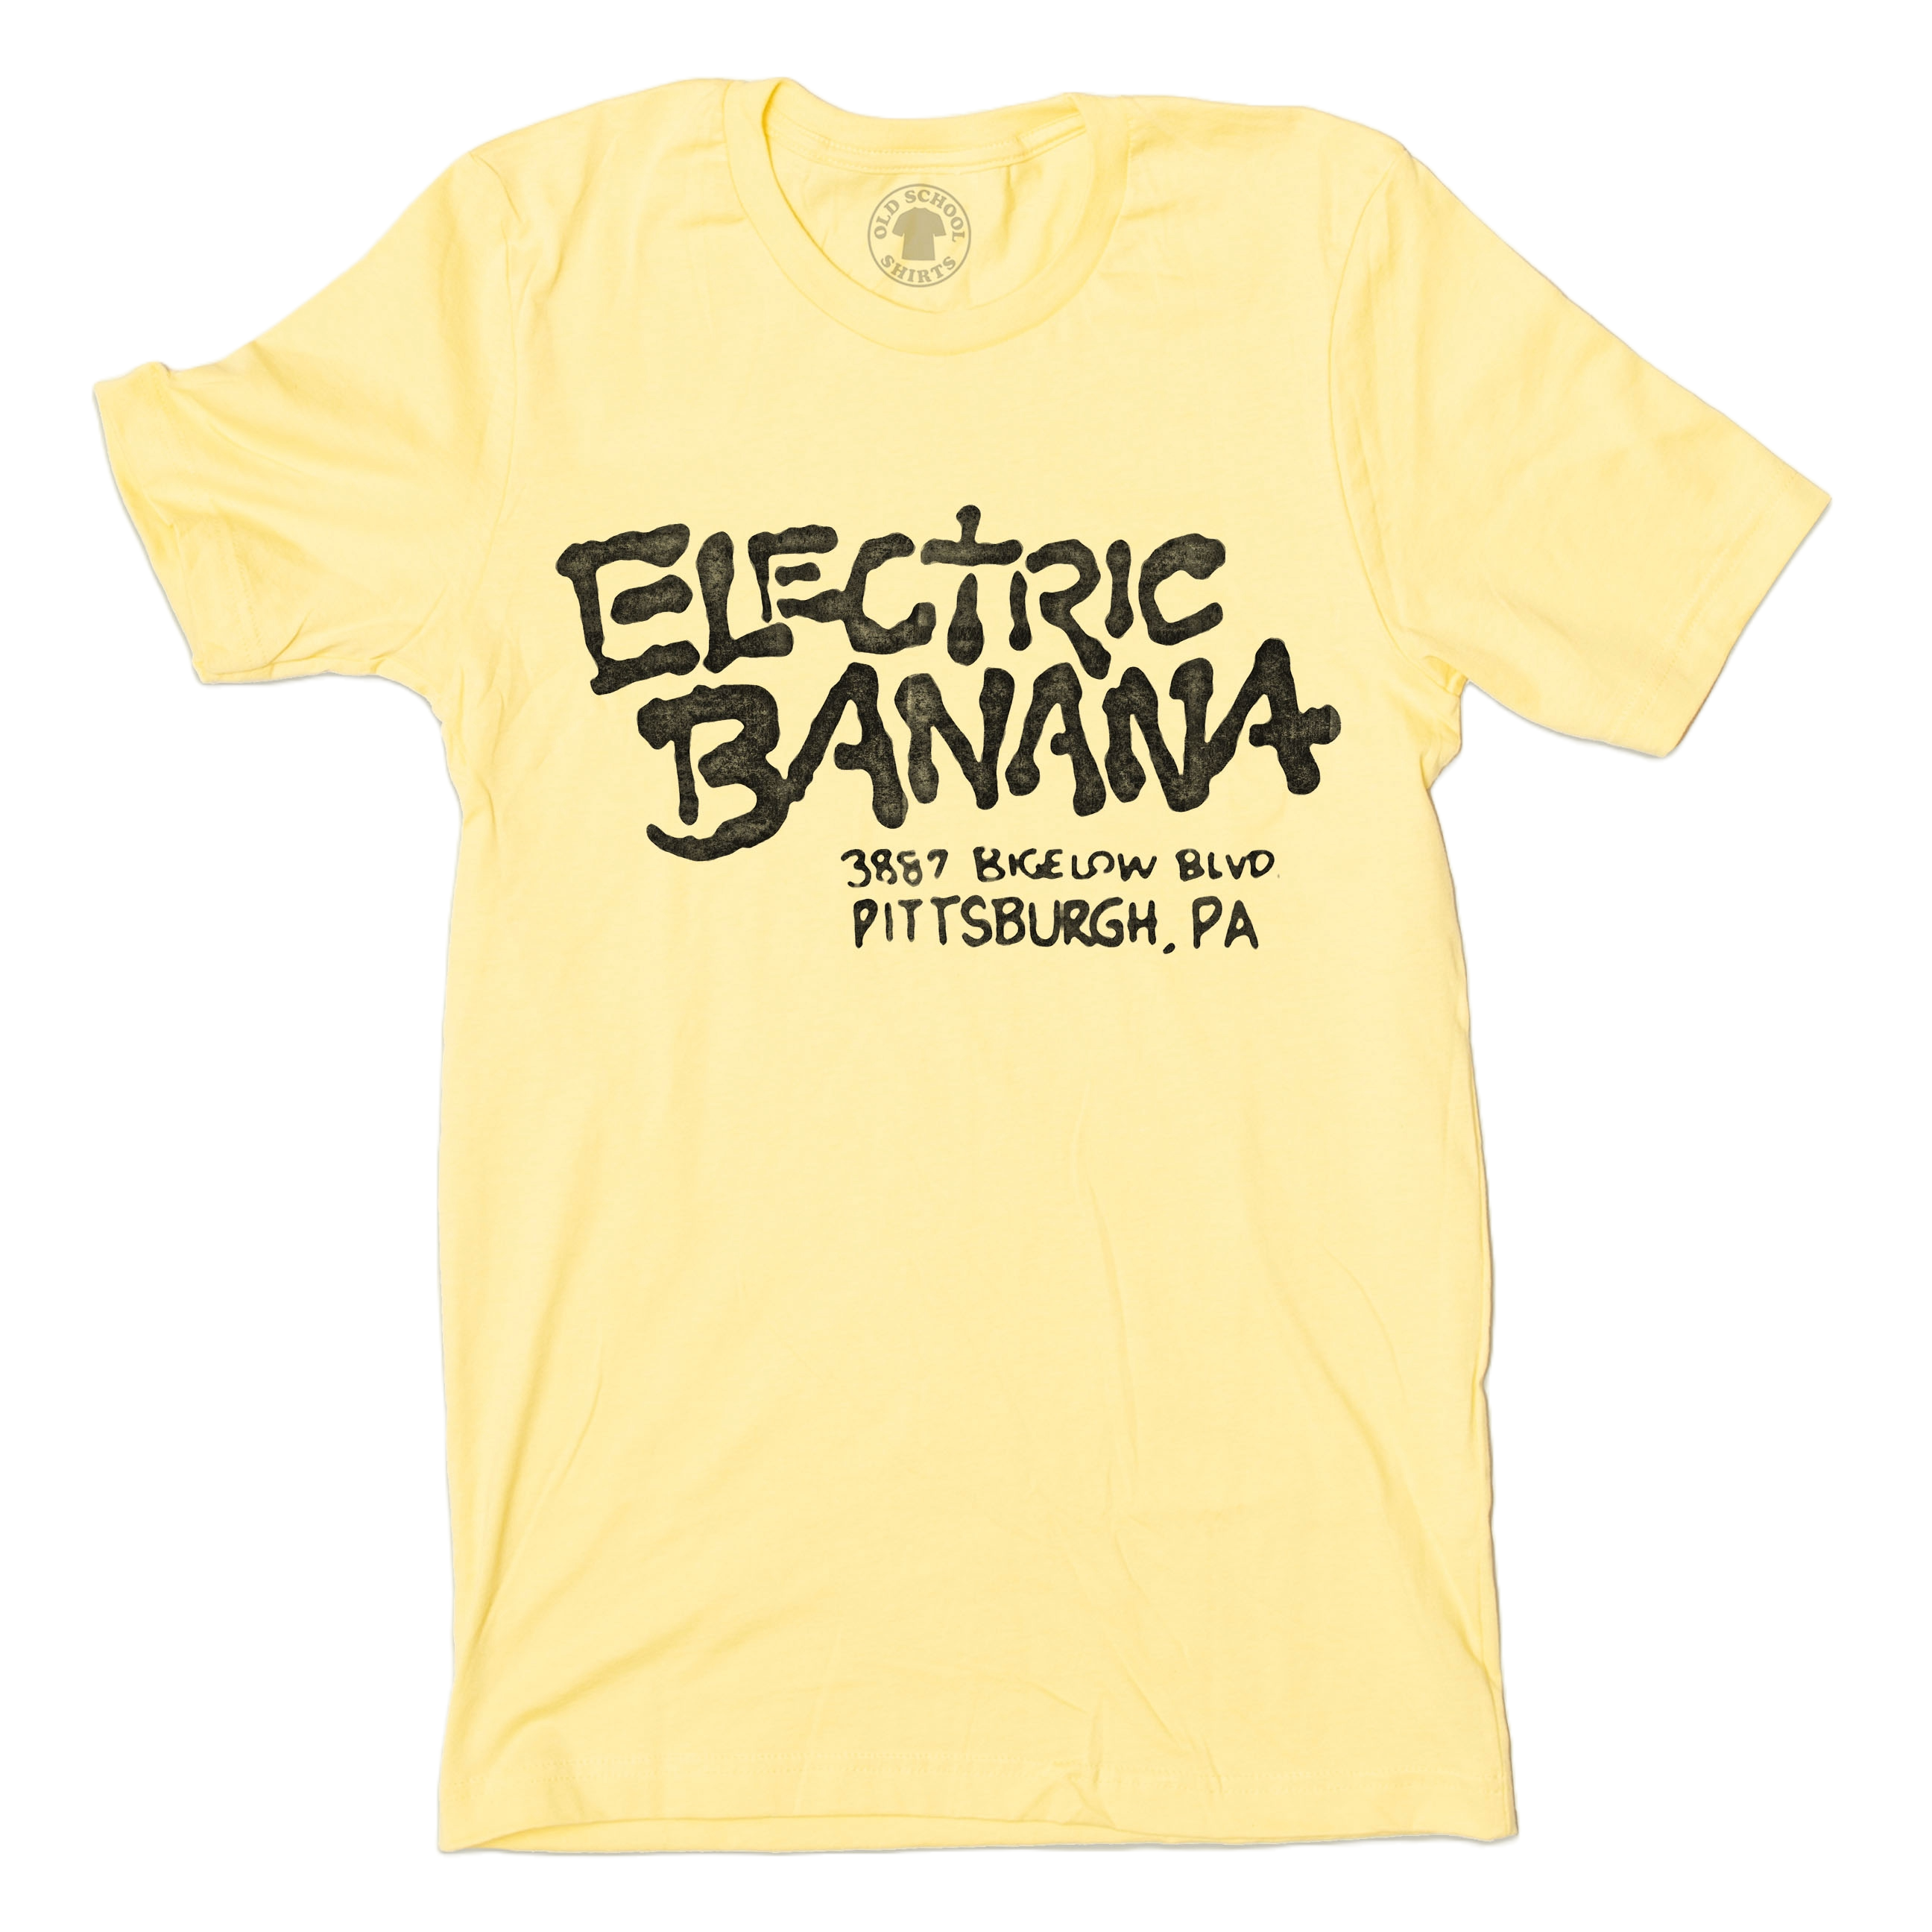 Banana jazz band t-shirt